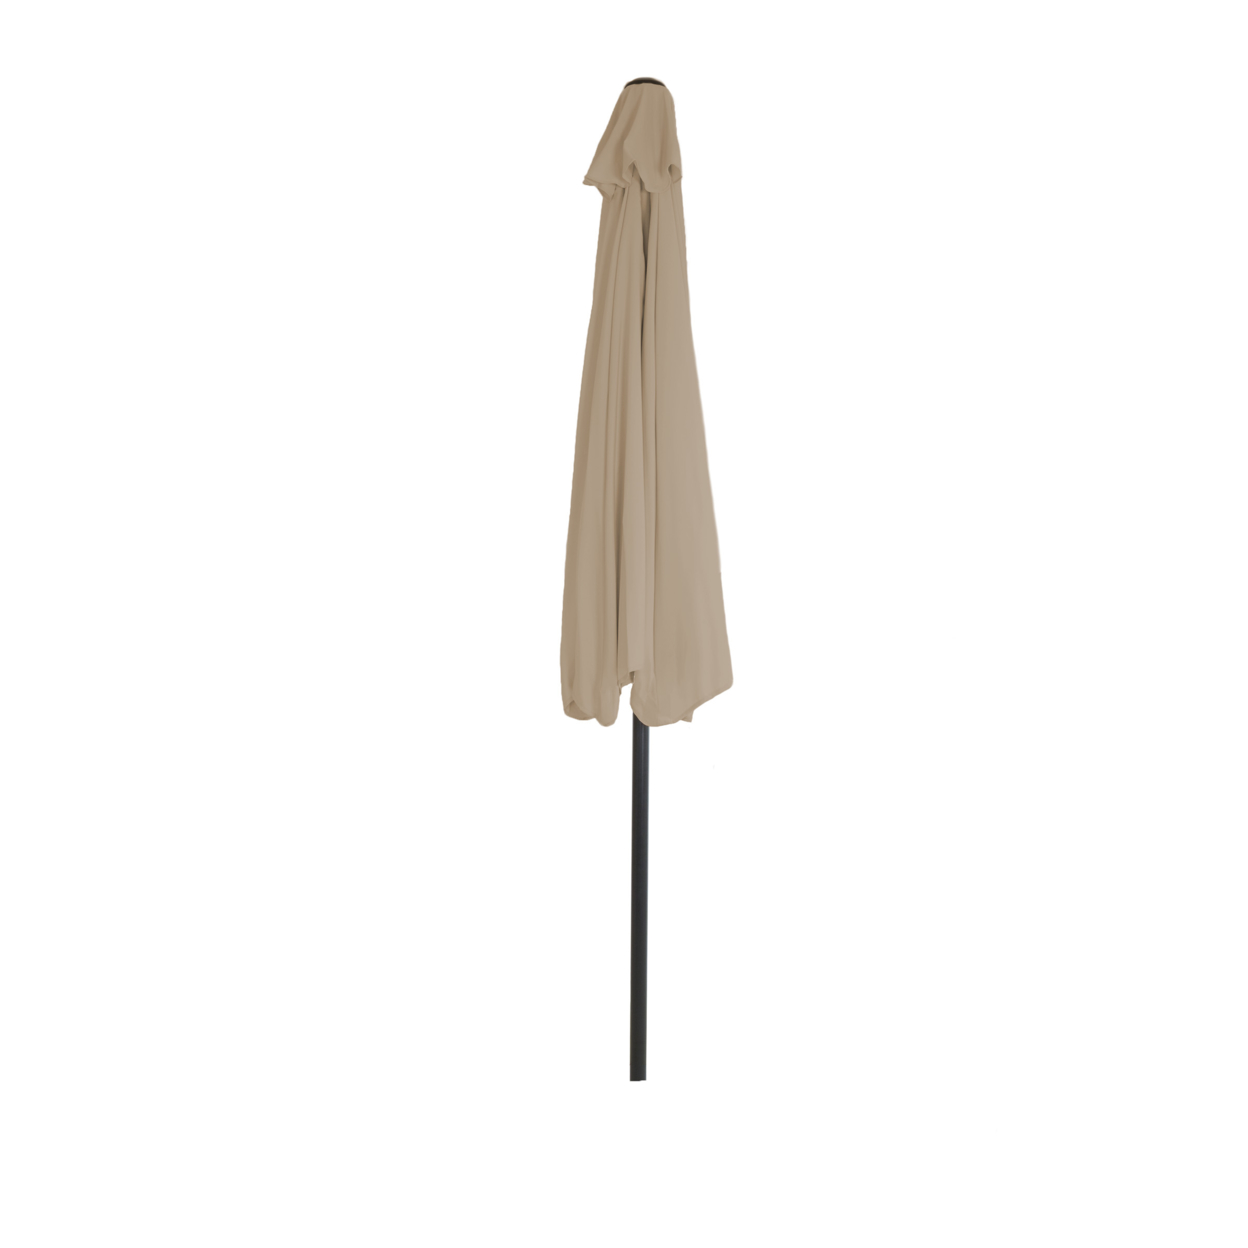 Half Round Patio Umbrella With Easy Crank- Small Space Outdoor Shade Umbrella Sand